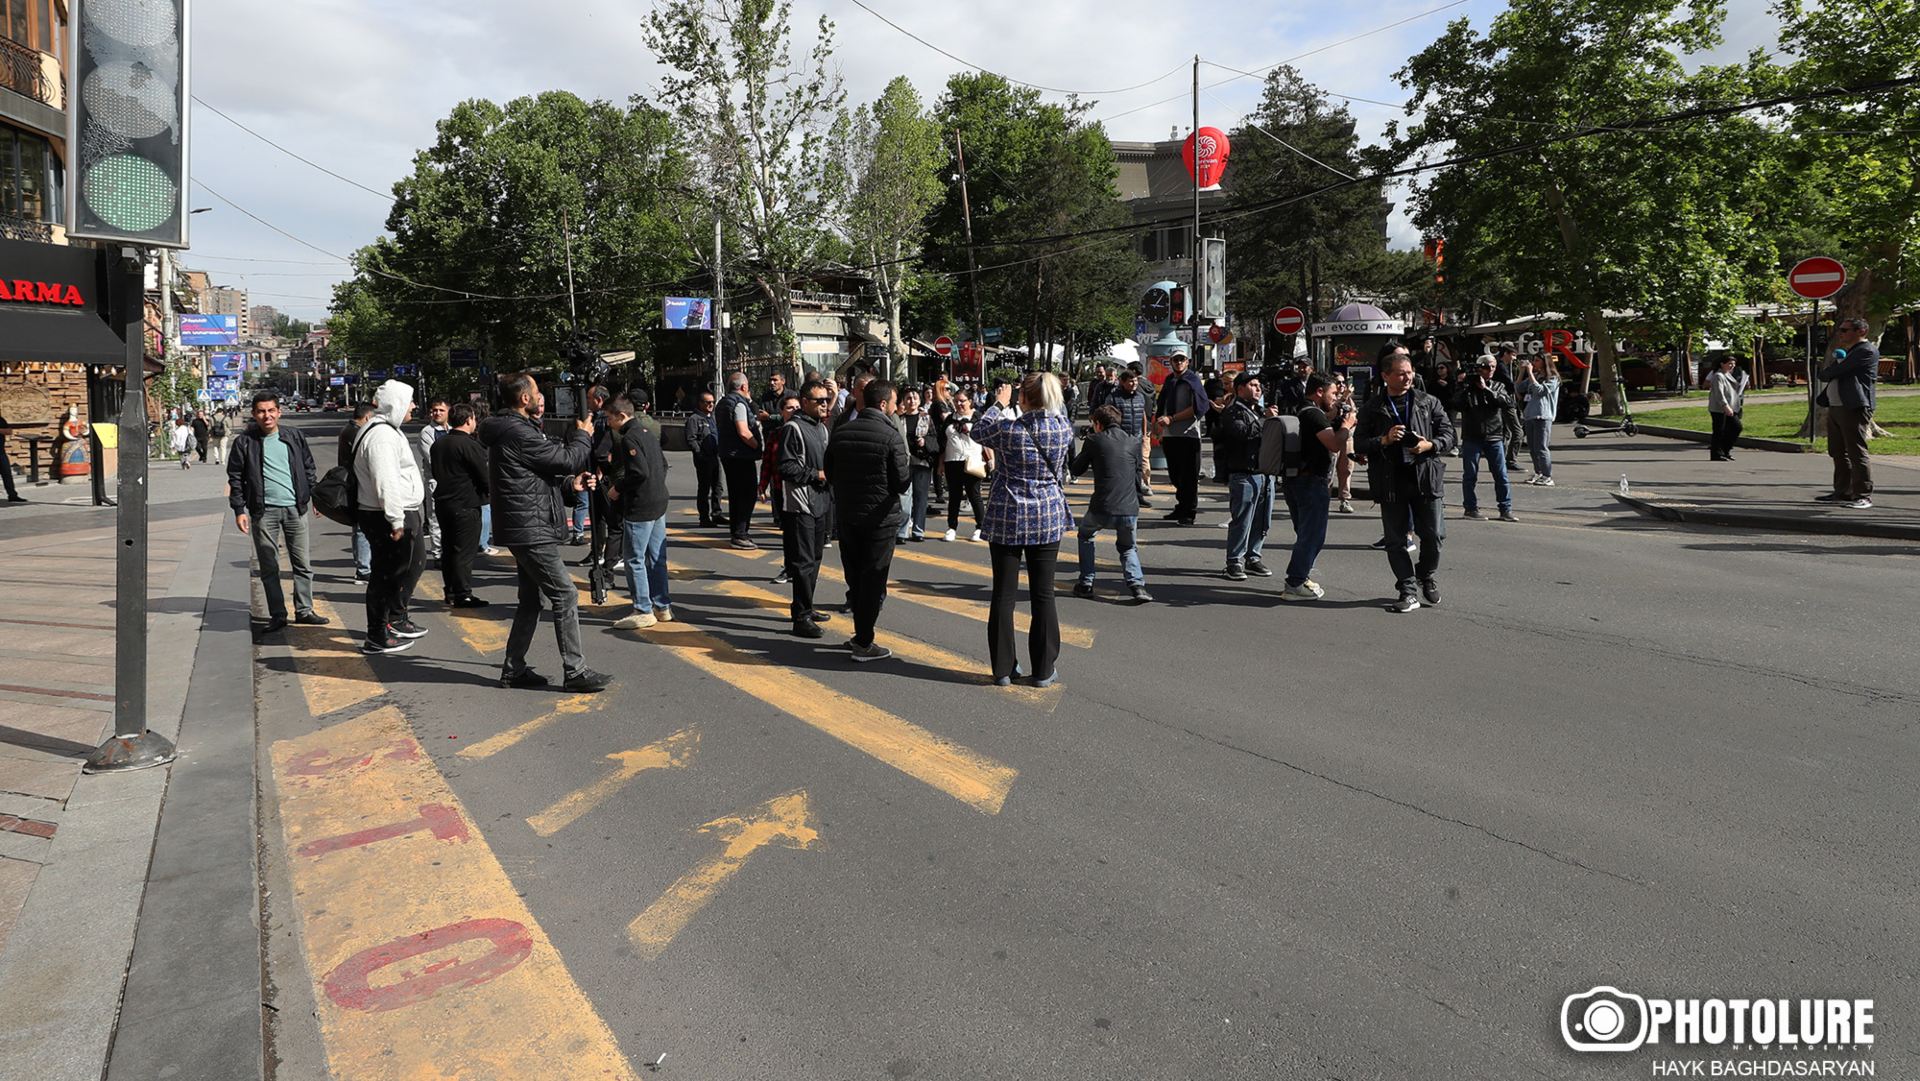 Երևանում անհնազանդության ակցիաներ են իրականացվել, բերման է ենթարկվել 151 քաղաքացի (լրացված)